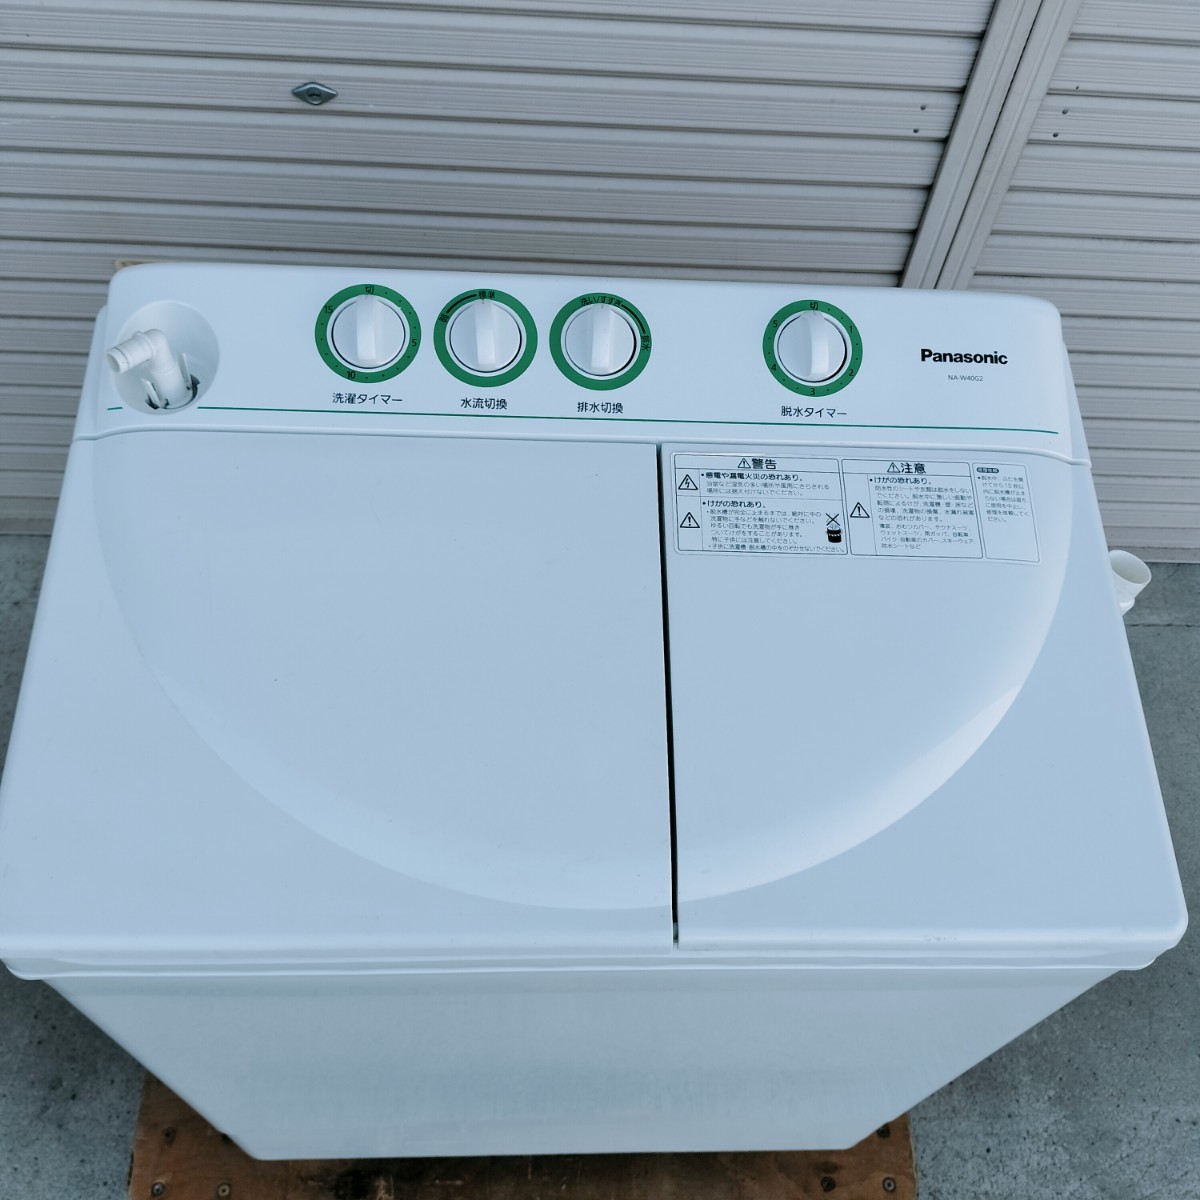 【中古品】Panasonic パナソニック 4.0kg二槽式洗濯機 NA-W40G2 2009年製 東京都町田市より家財便Cランク 直接歓迎 【管N183-2309】_画像6